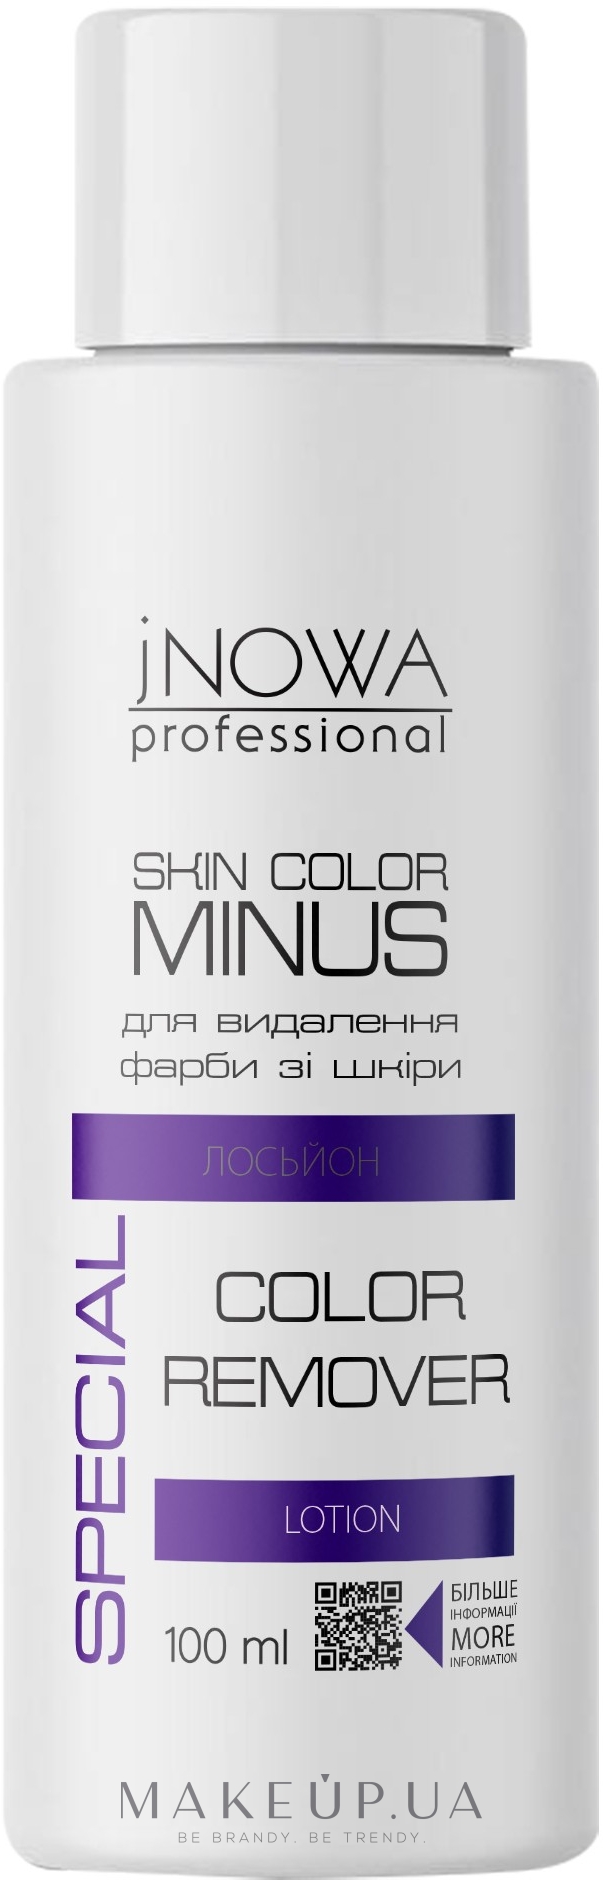 Лосьйон для видалення фарби зі шкіри - jNOWA Professional Skin Color Minus — фото 100ml